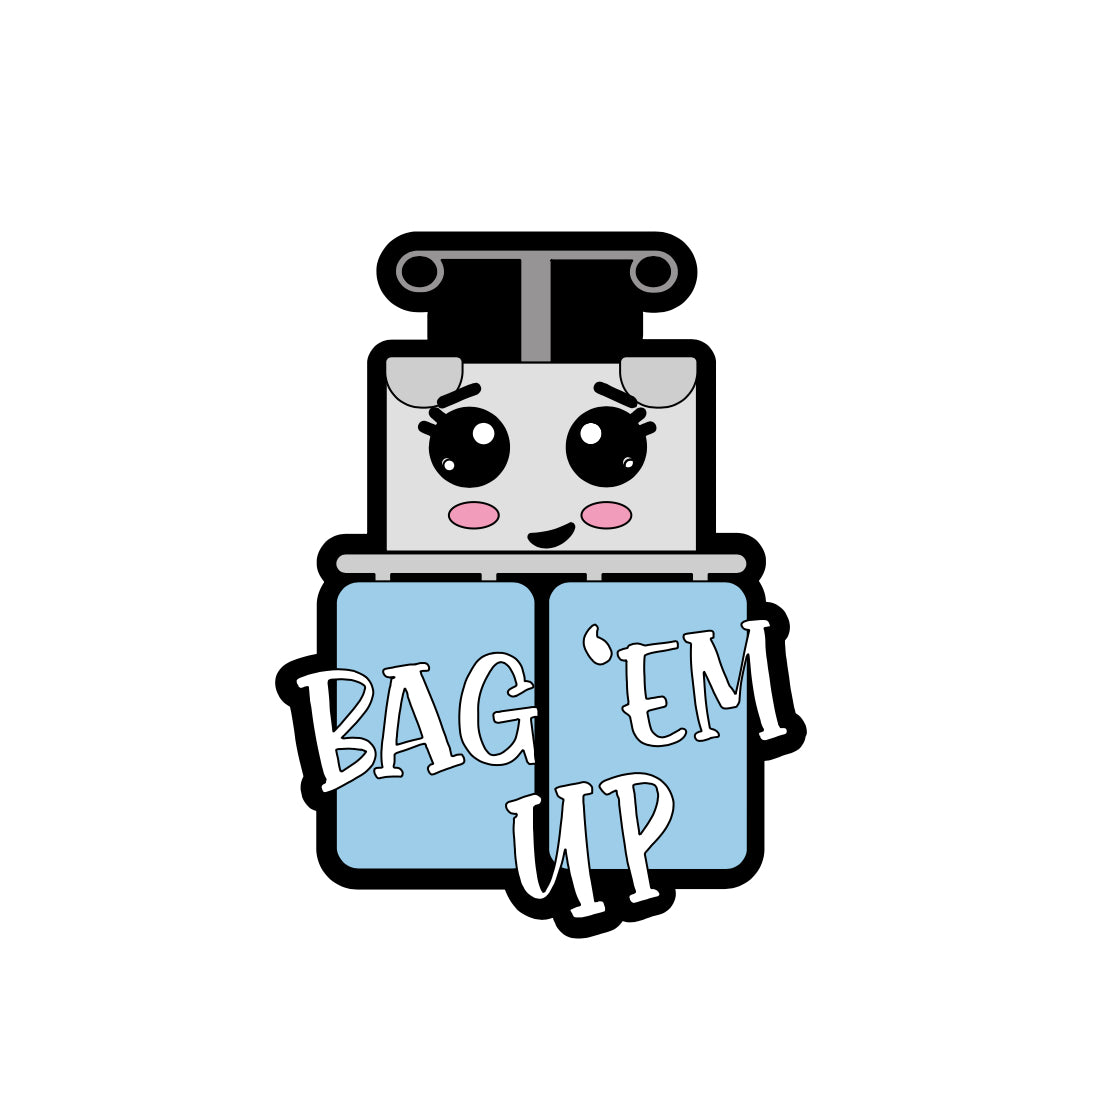 Bag ‘Em Up Badge Reel